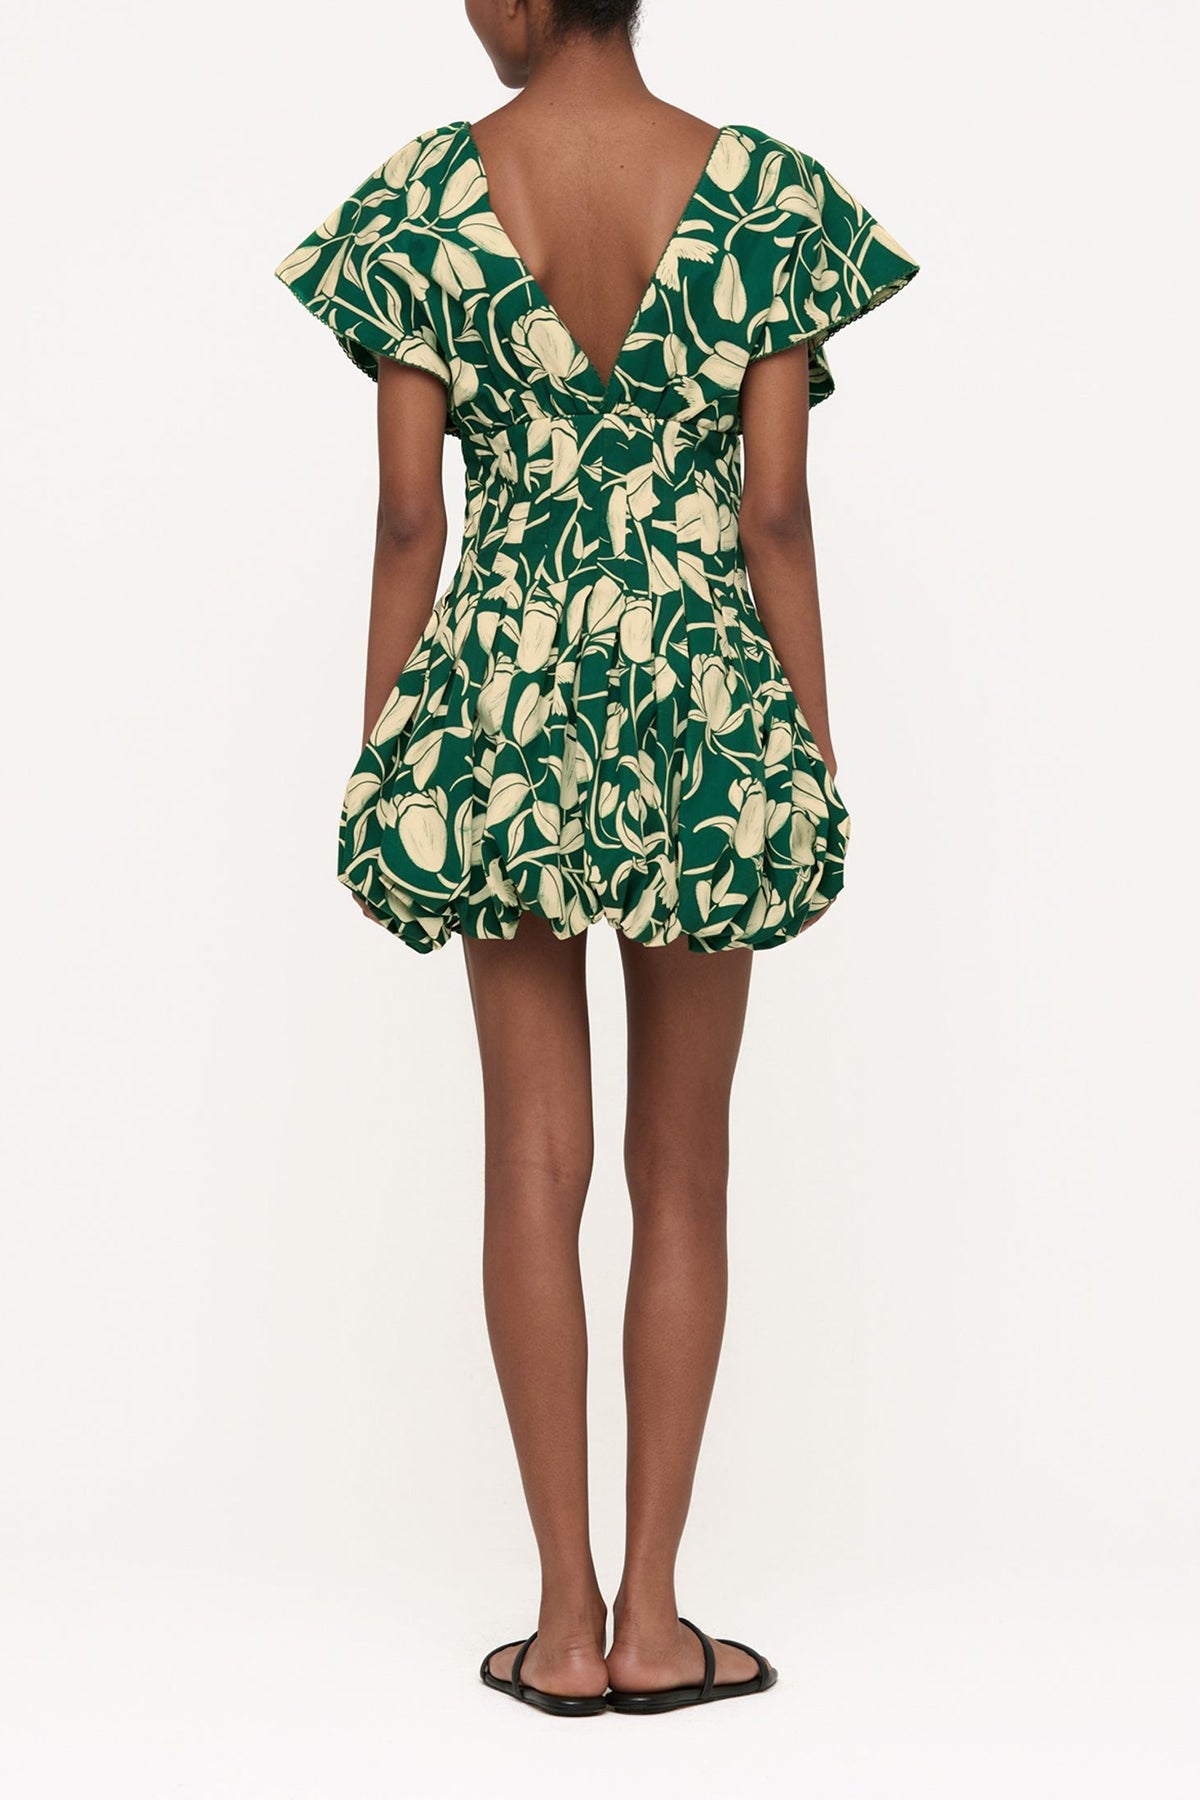 Annato Flora Cotton Mini Dress in Green - shop-olivia.com